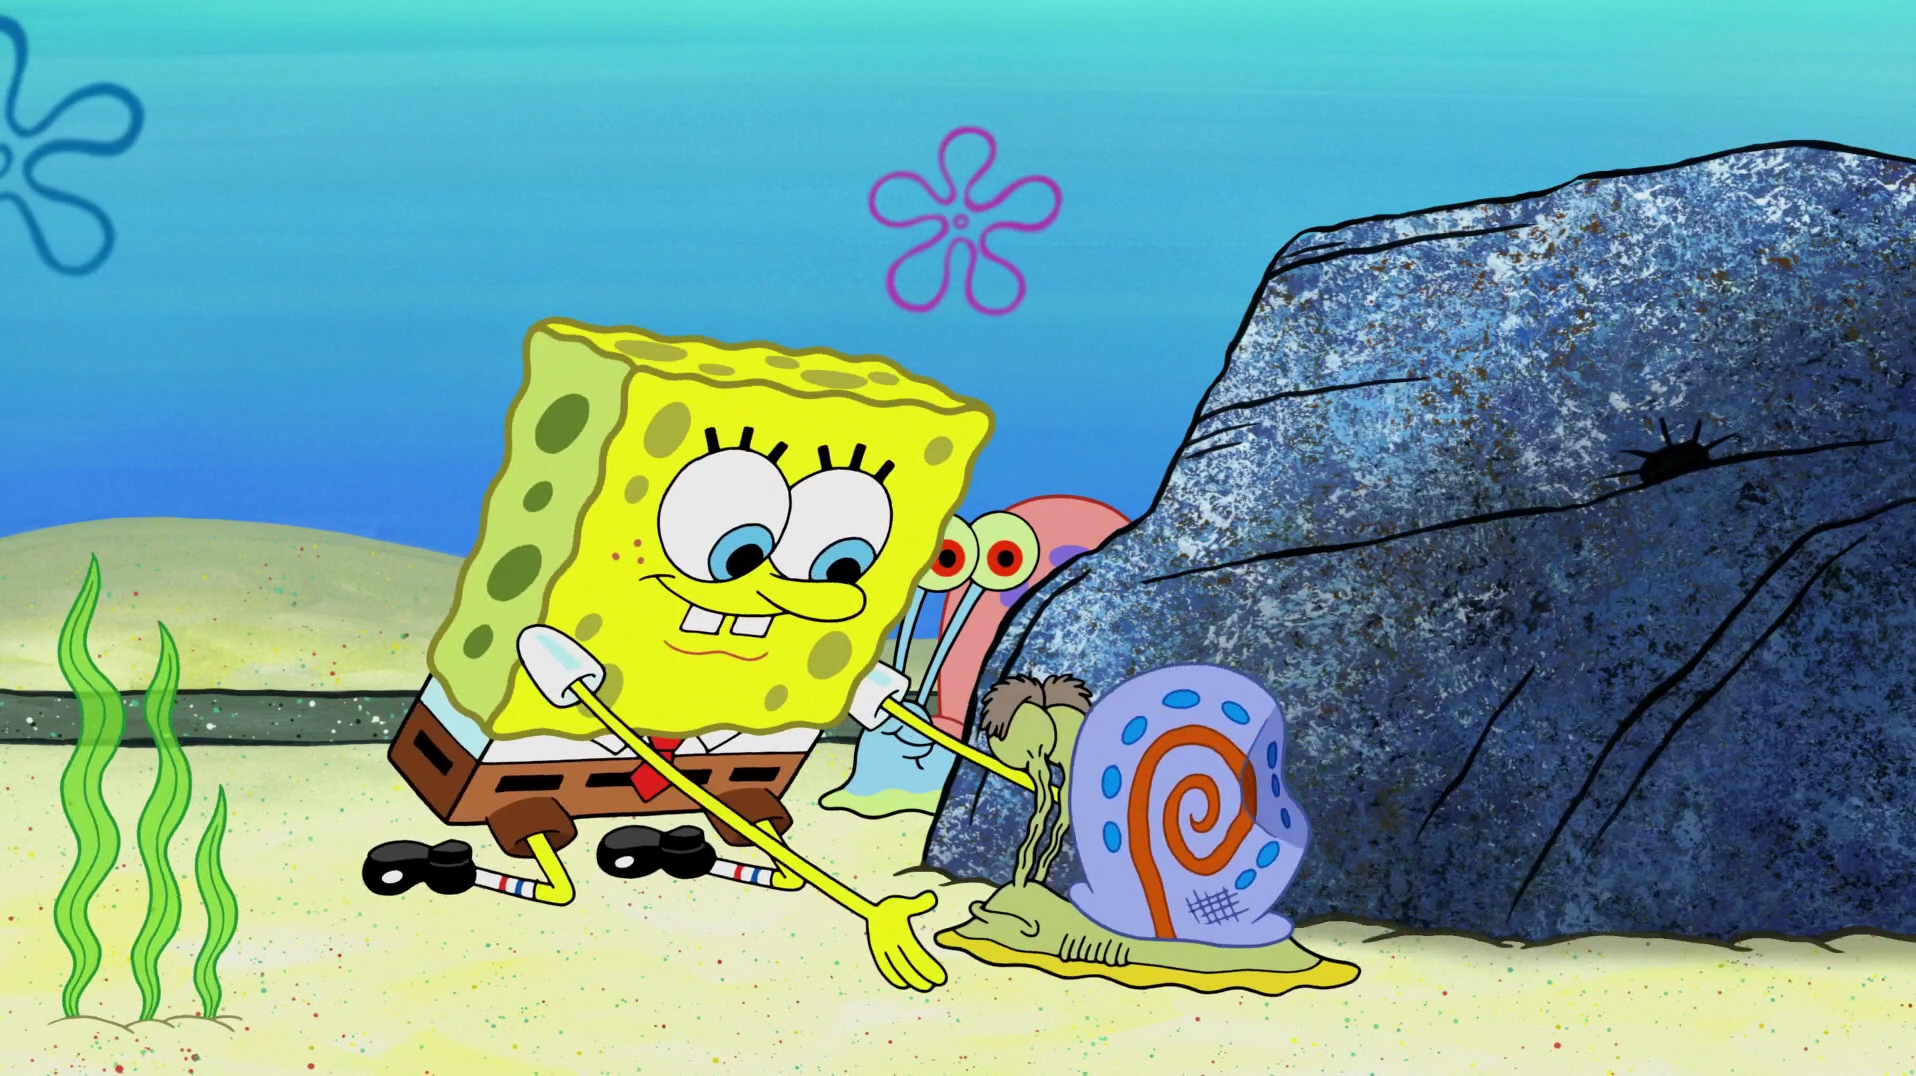 Spongebob tango. Спанч Боб Squarepants квадратные штаны. Спанч Боб сквер Пенс. Губка Боб и Спанч Боб.